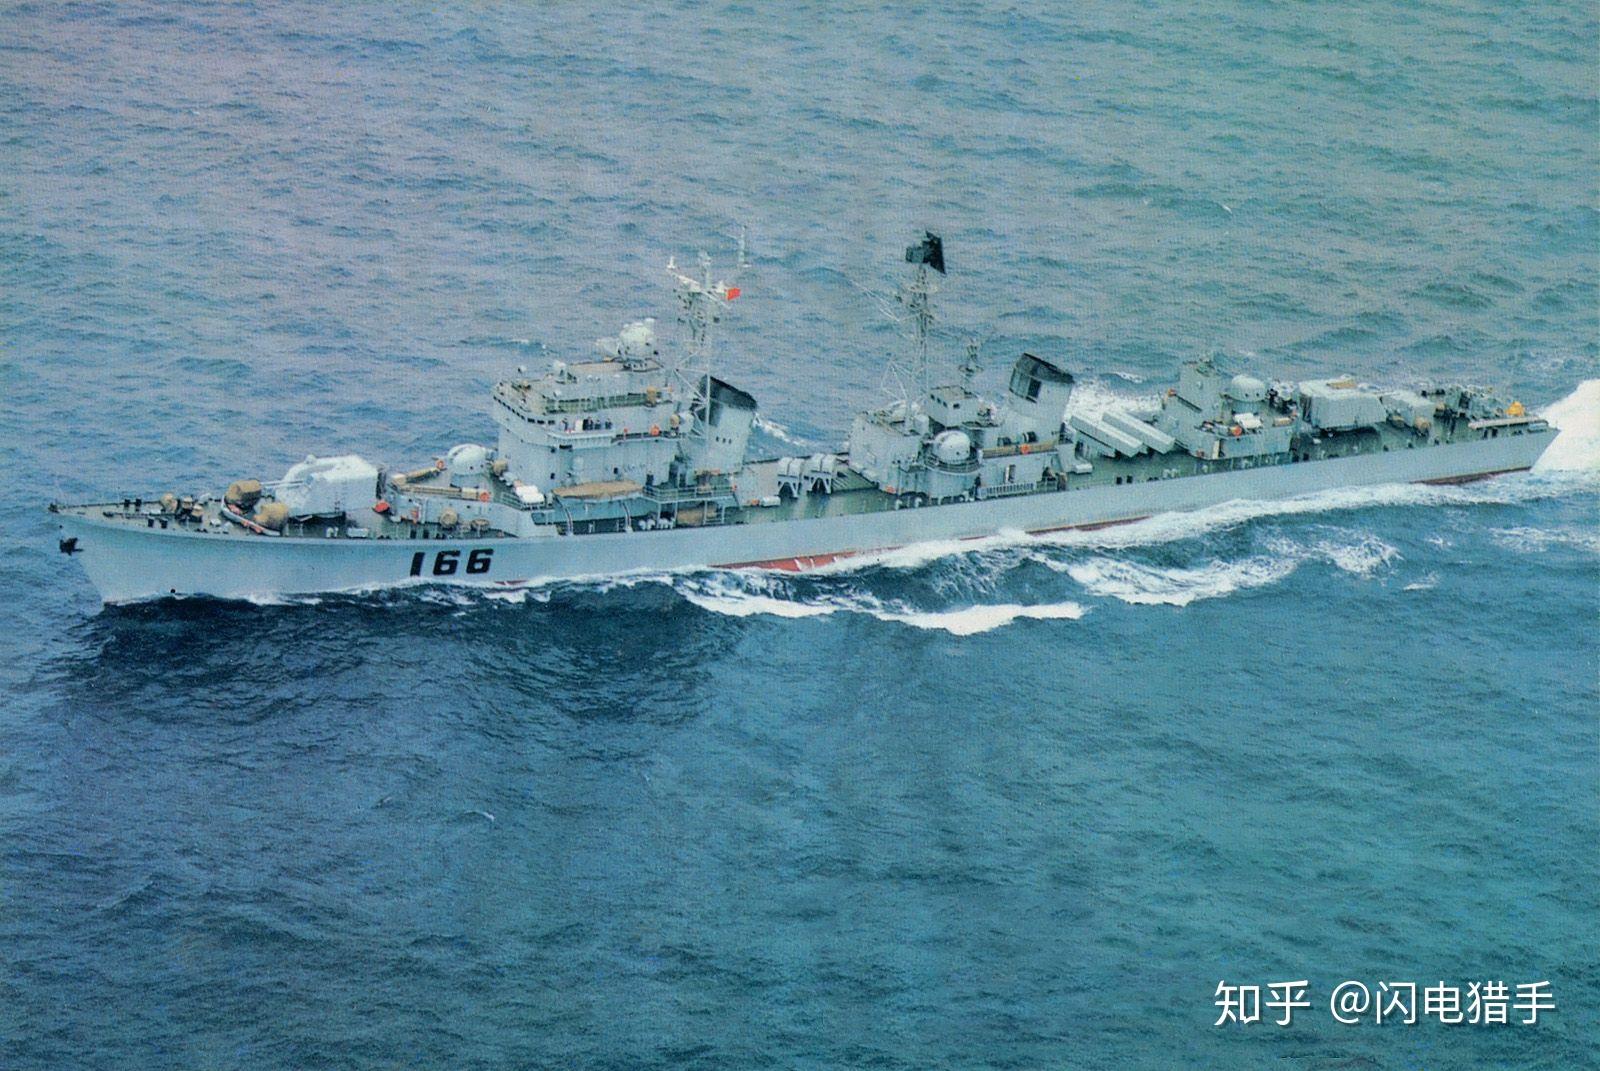 老舰传奇——中国051型导弹驱逐舰